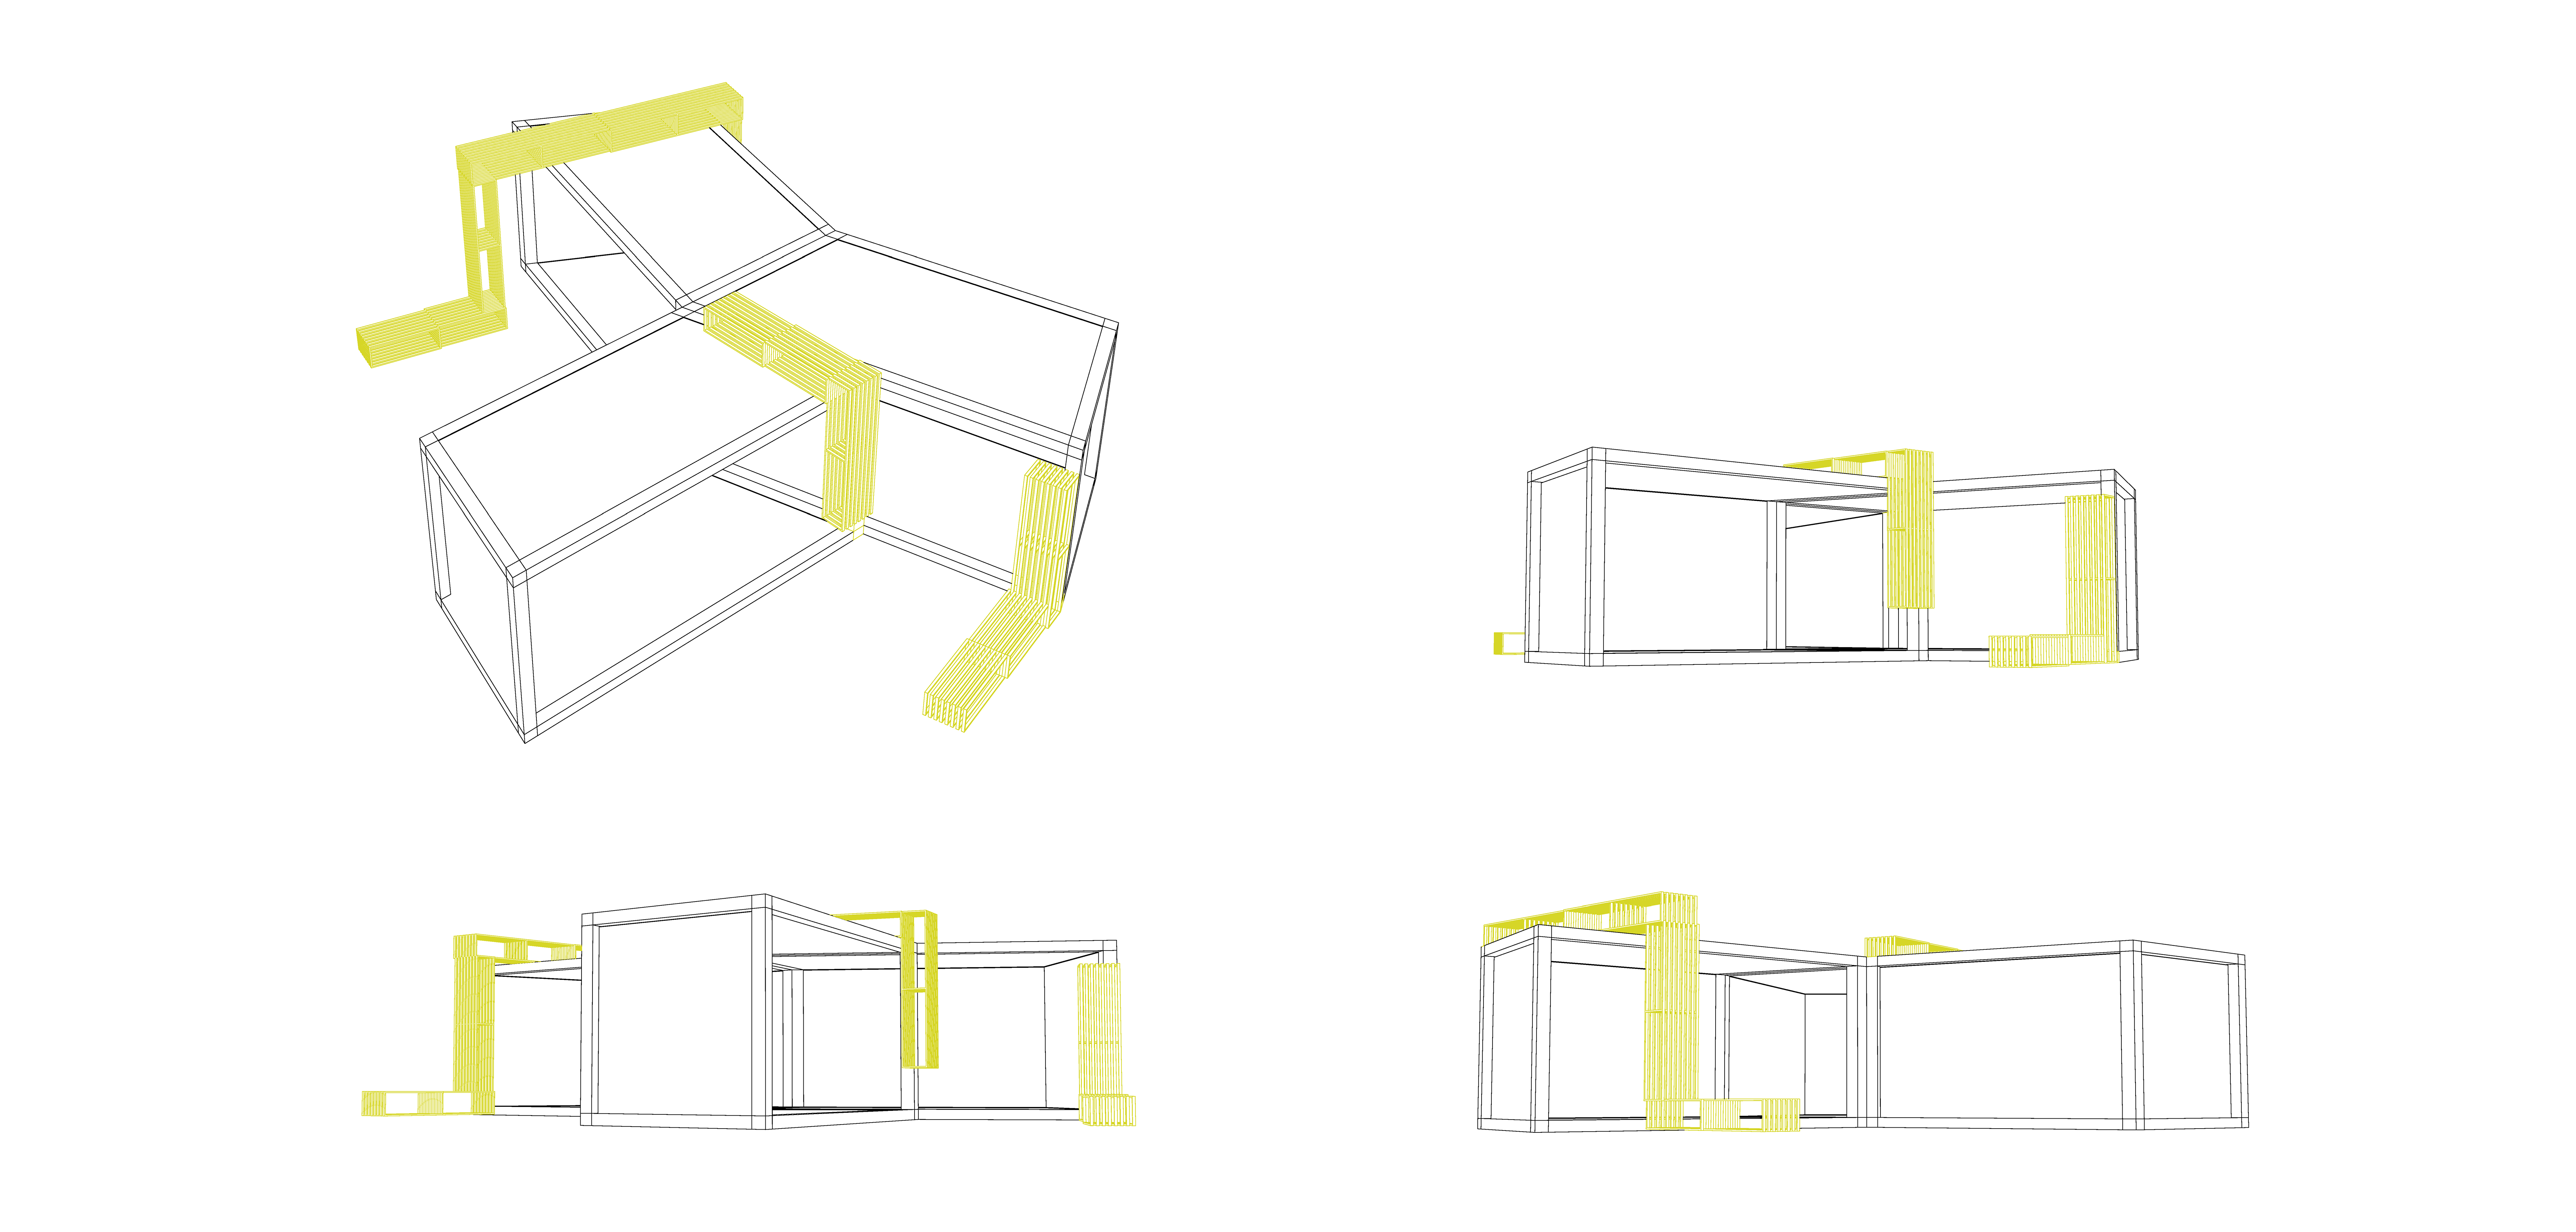 Perspektíva - stavba sa skladá s troch čiernych modulov, doplnených o drevené prvky nábytku a mobiliáru